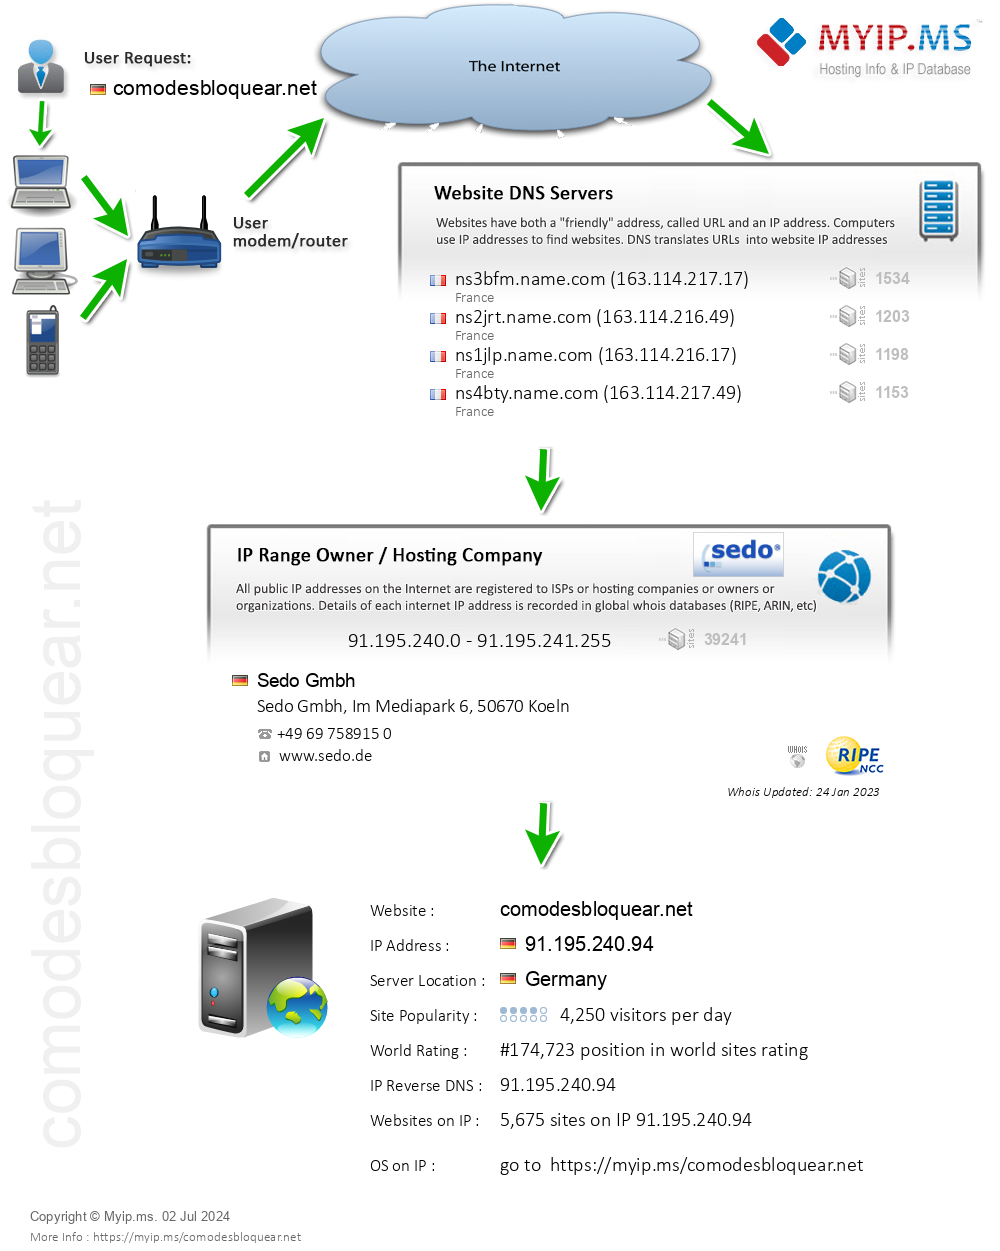 Comodesbloquear.net - Website Hosting Visual IP Diagram